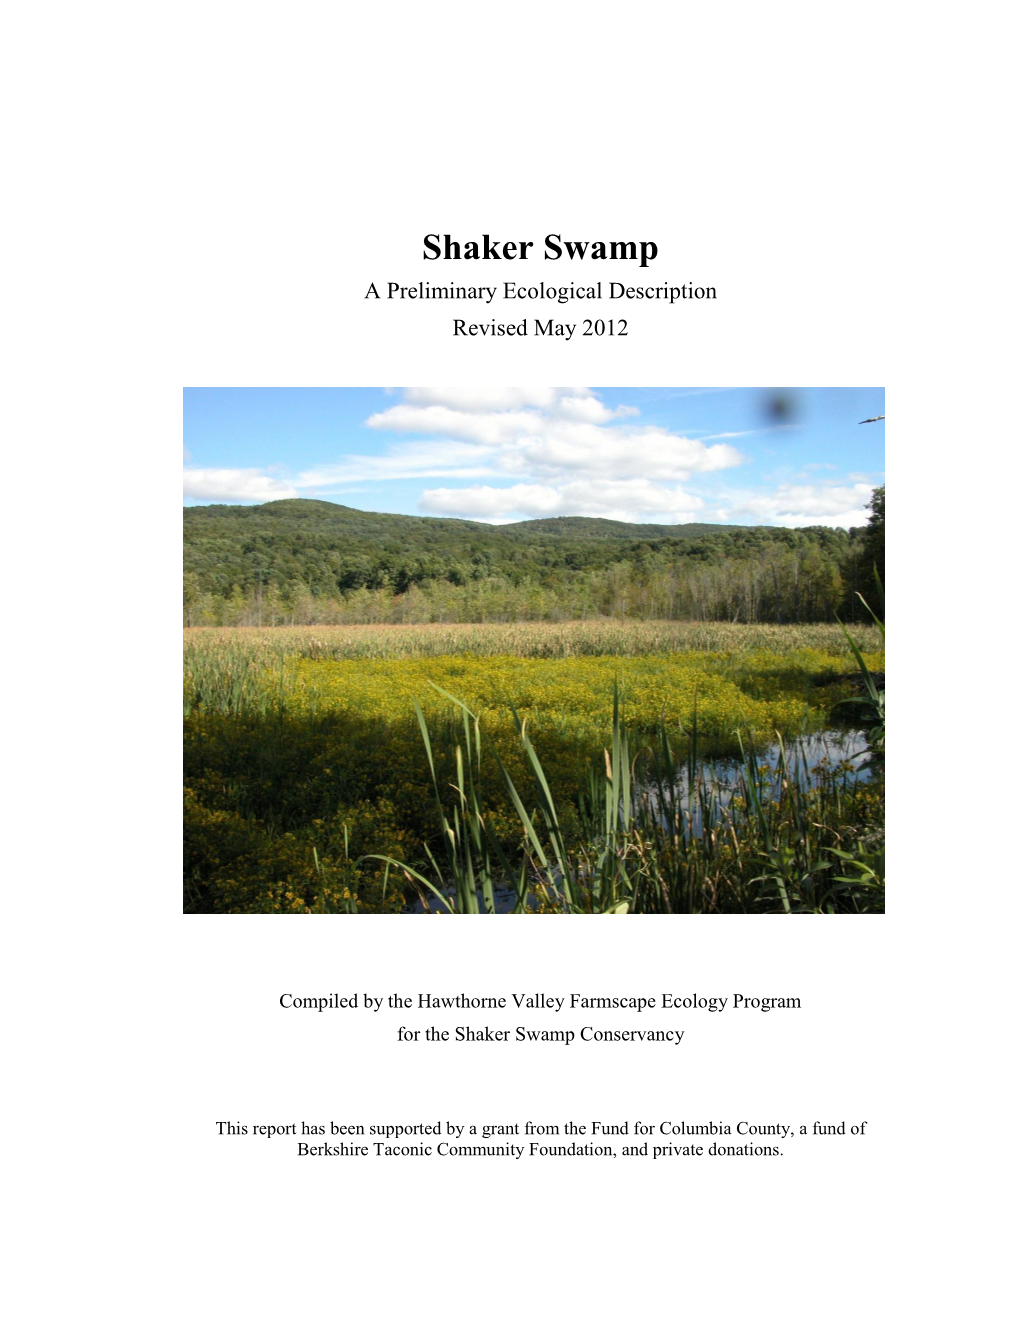 Shaker Swamp Conservancy